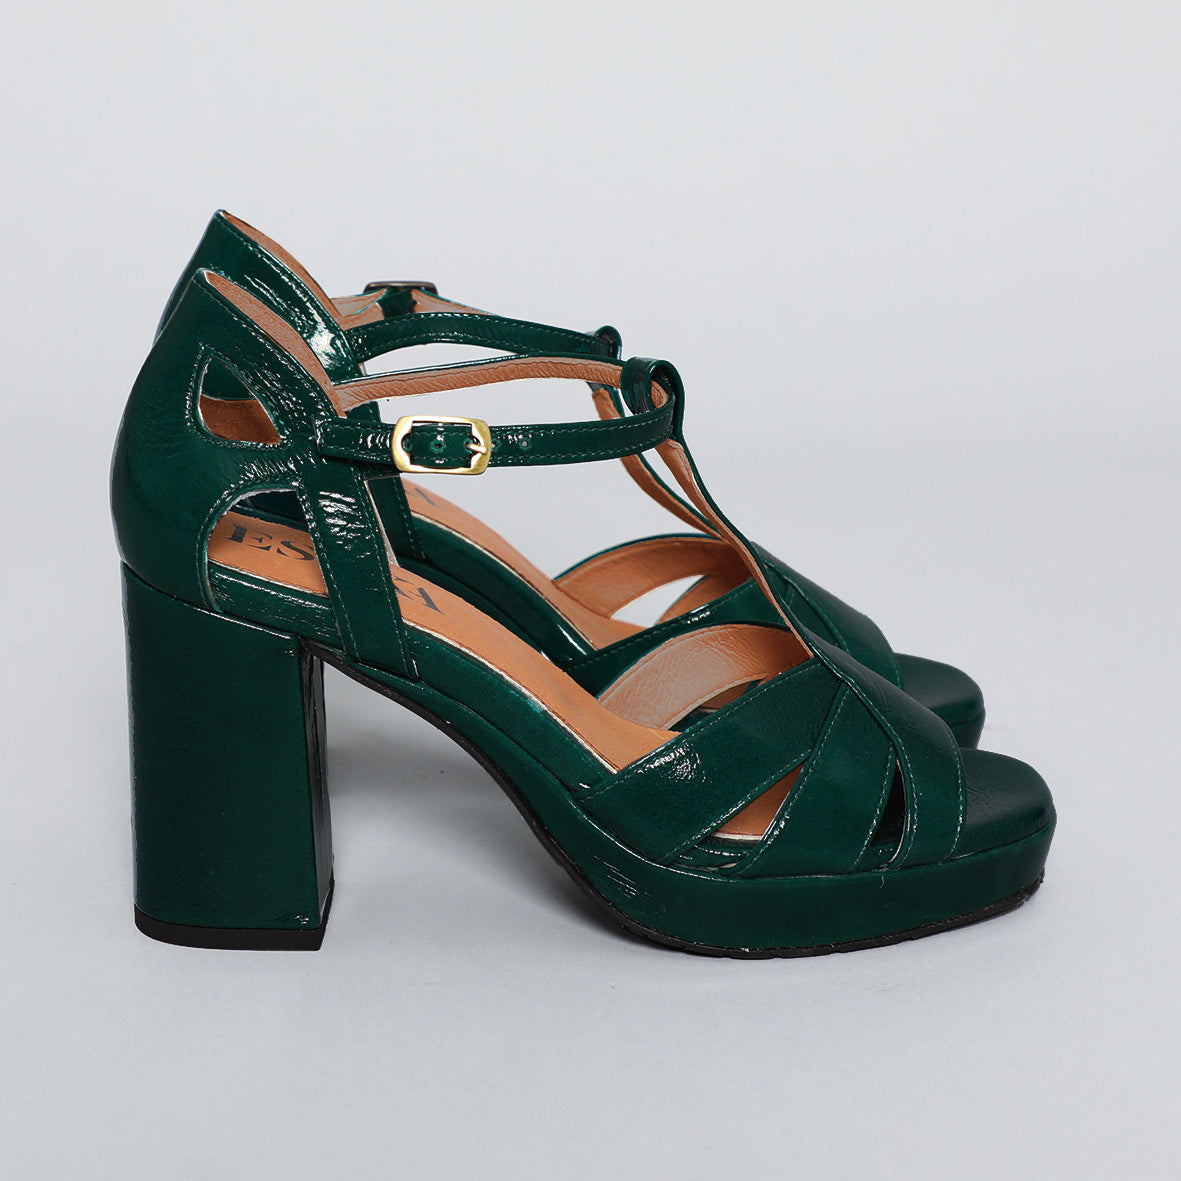 Green Heels | Green Heels Online | Buy Women's Green Heels New Zealand |-  THE ICONIC